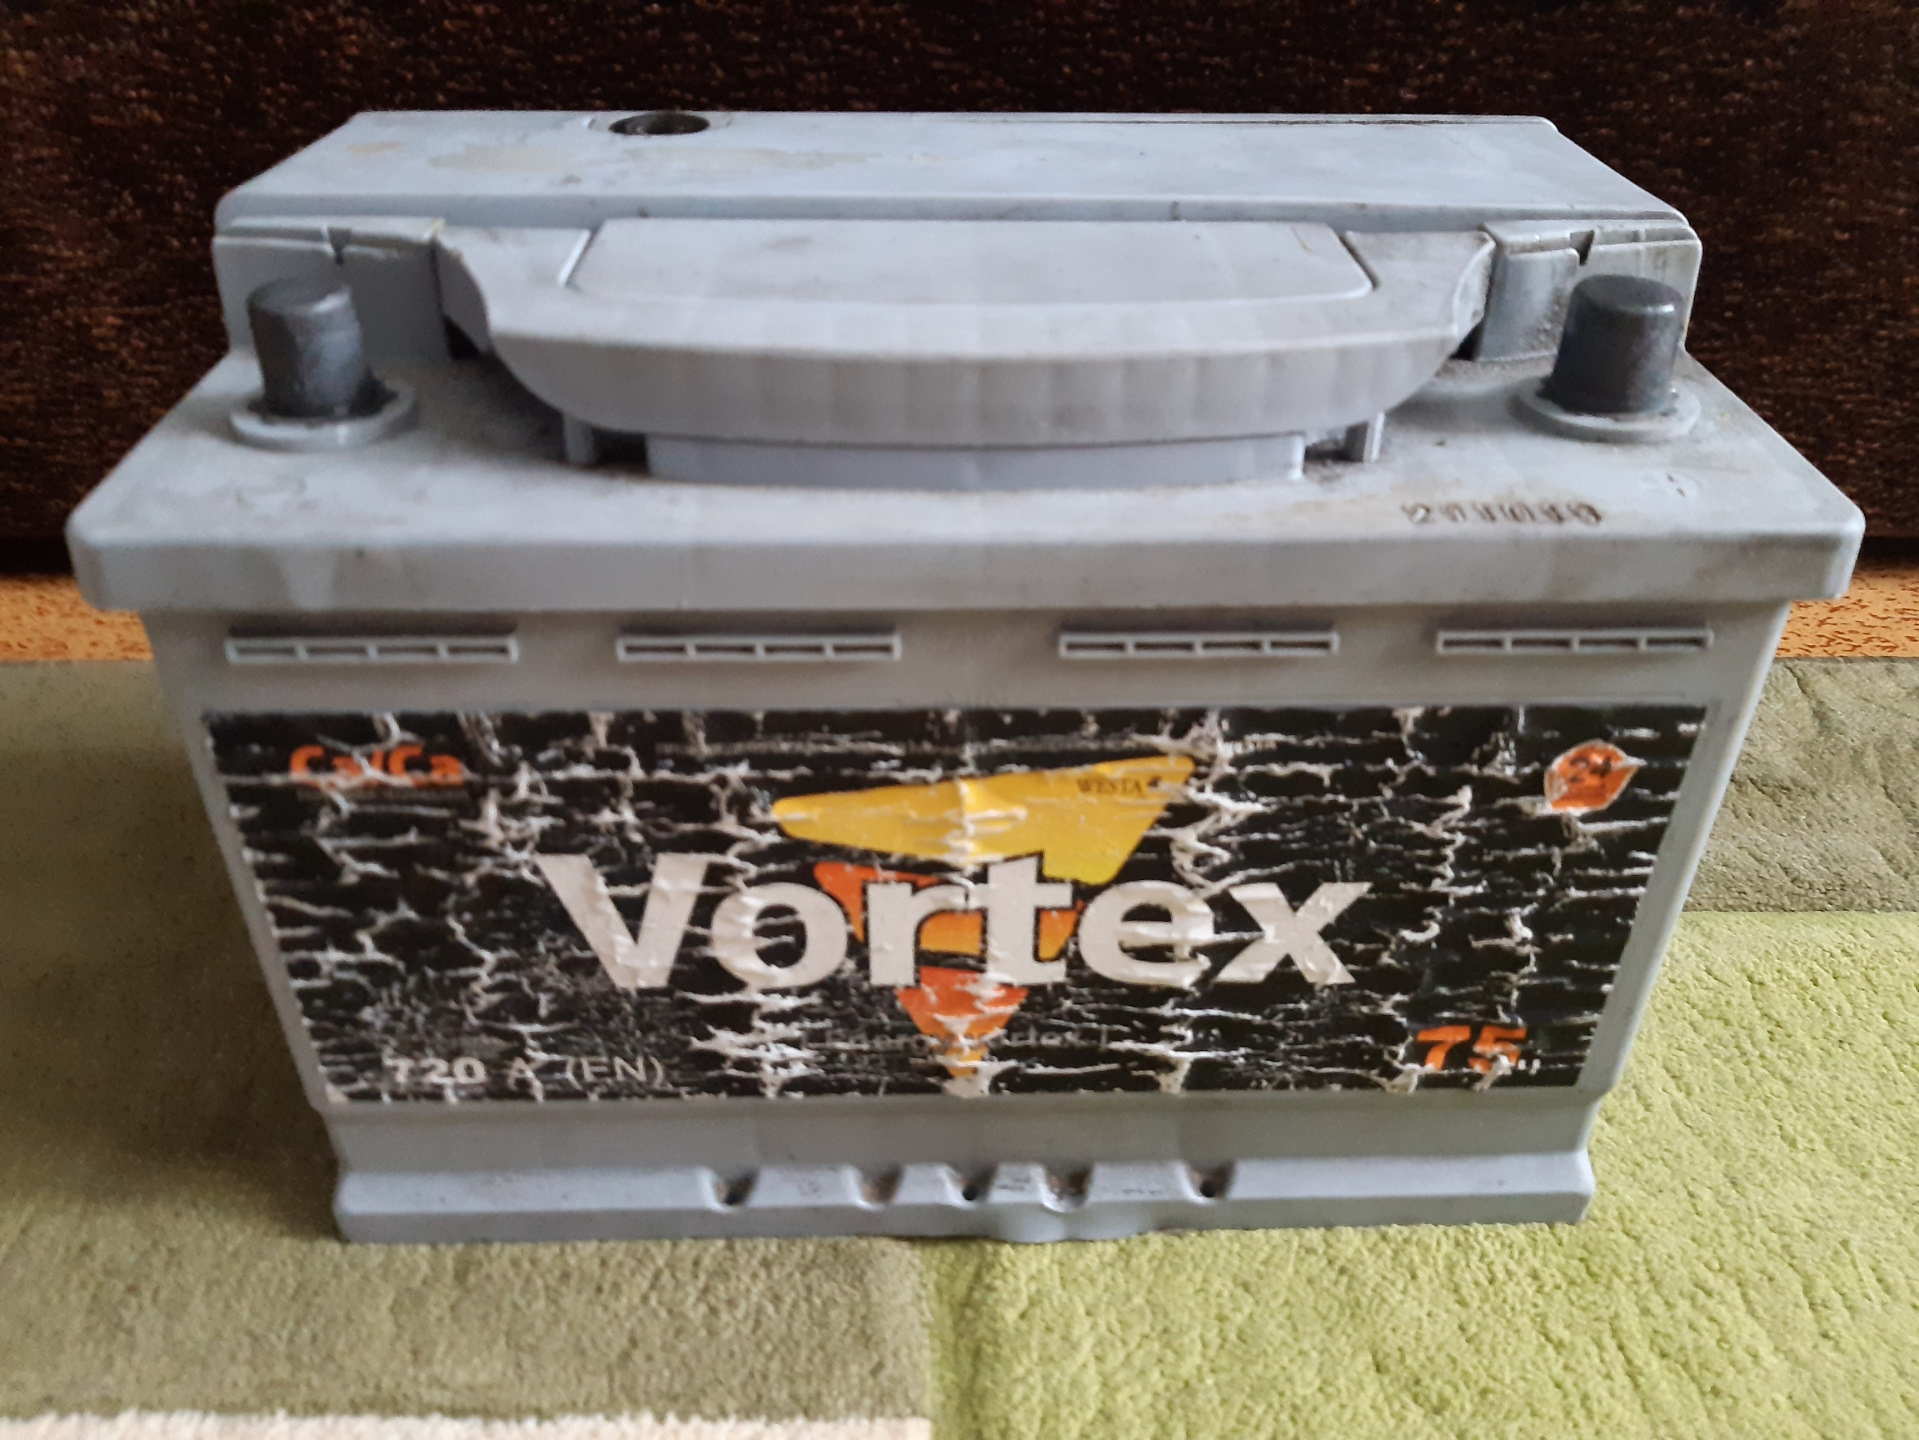 Аккумулятор vortex. Vortex аккумулятор 60 Ач. Аккумулятор Вортекс 60 ампер. Аккумулятор Вортекс 62 амперный. Аккумуляторная батарейка Вортекс.